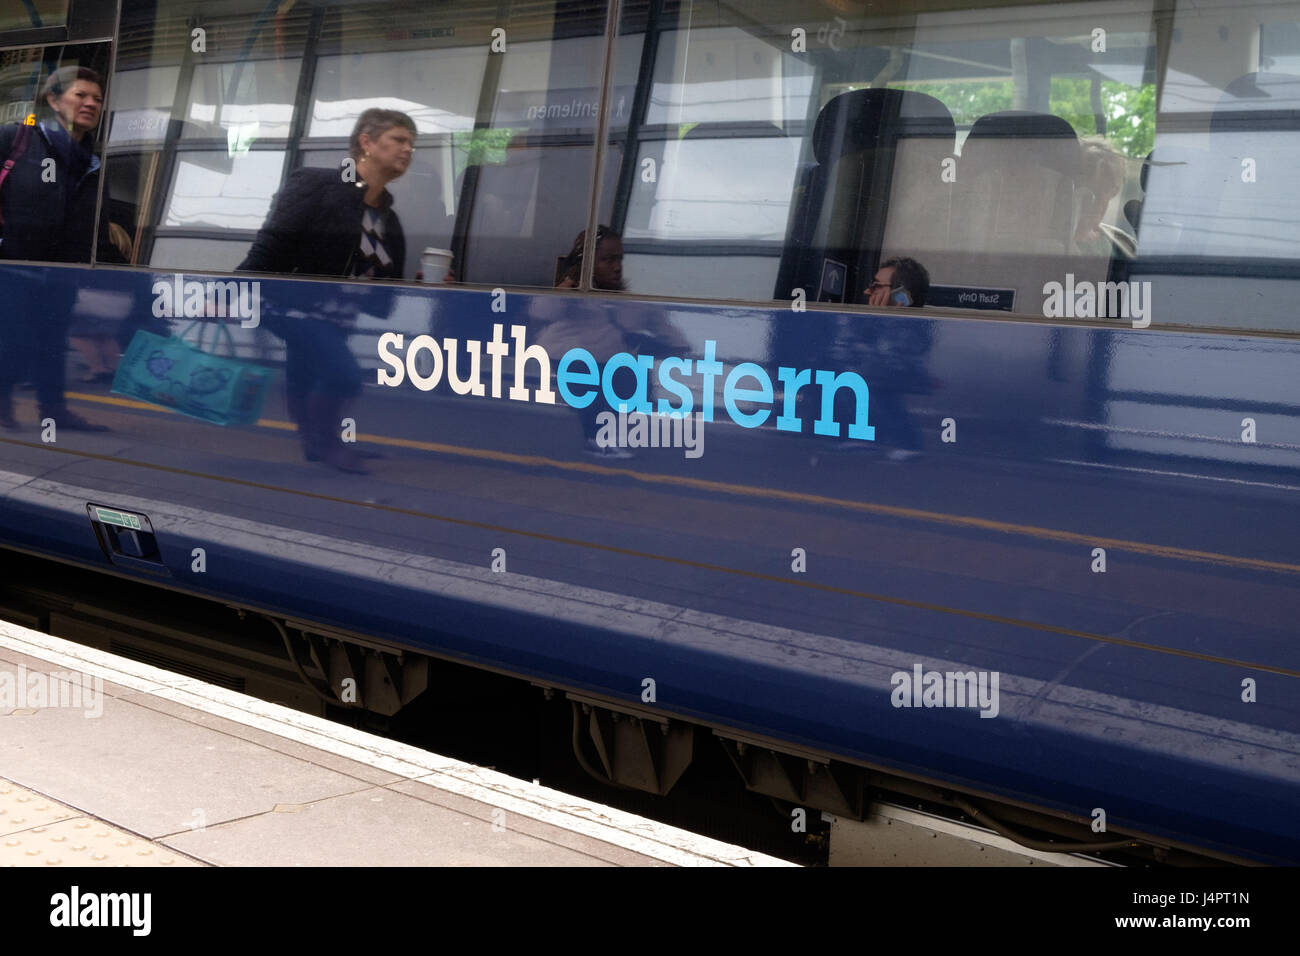 Treno sud-orientale che aspetta alla stazione internazionale di Ashford, riflessione passeggeri, persone, logo sul treno, ashford, kent, regno unito Foto Stock